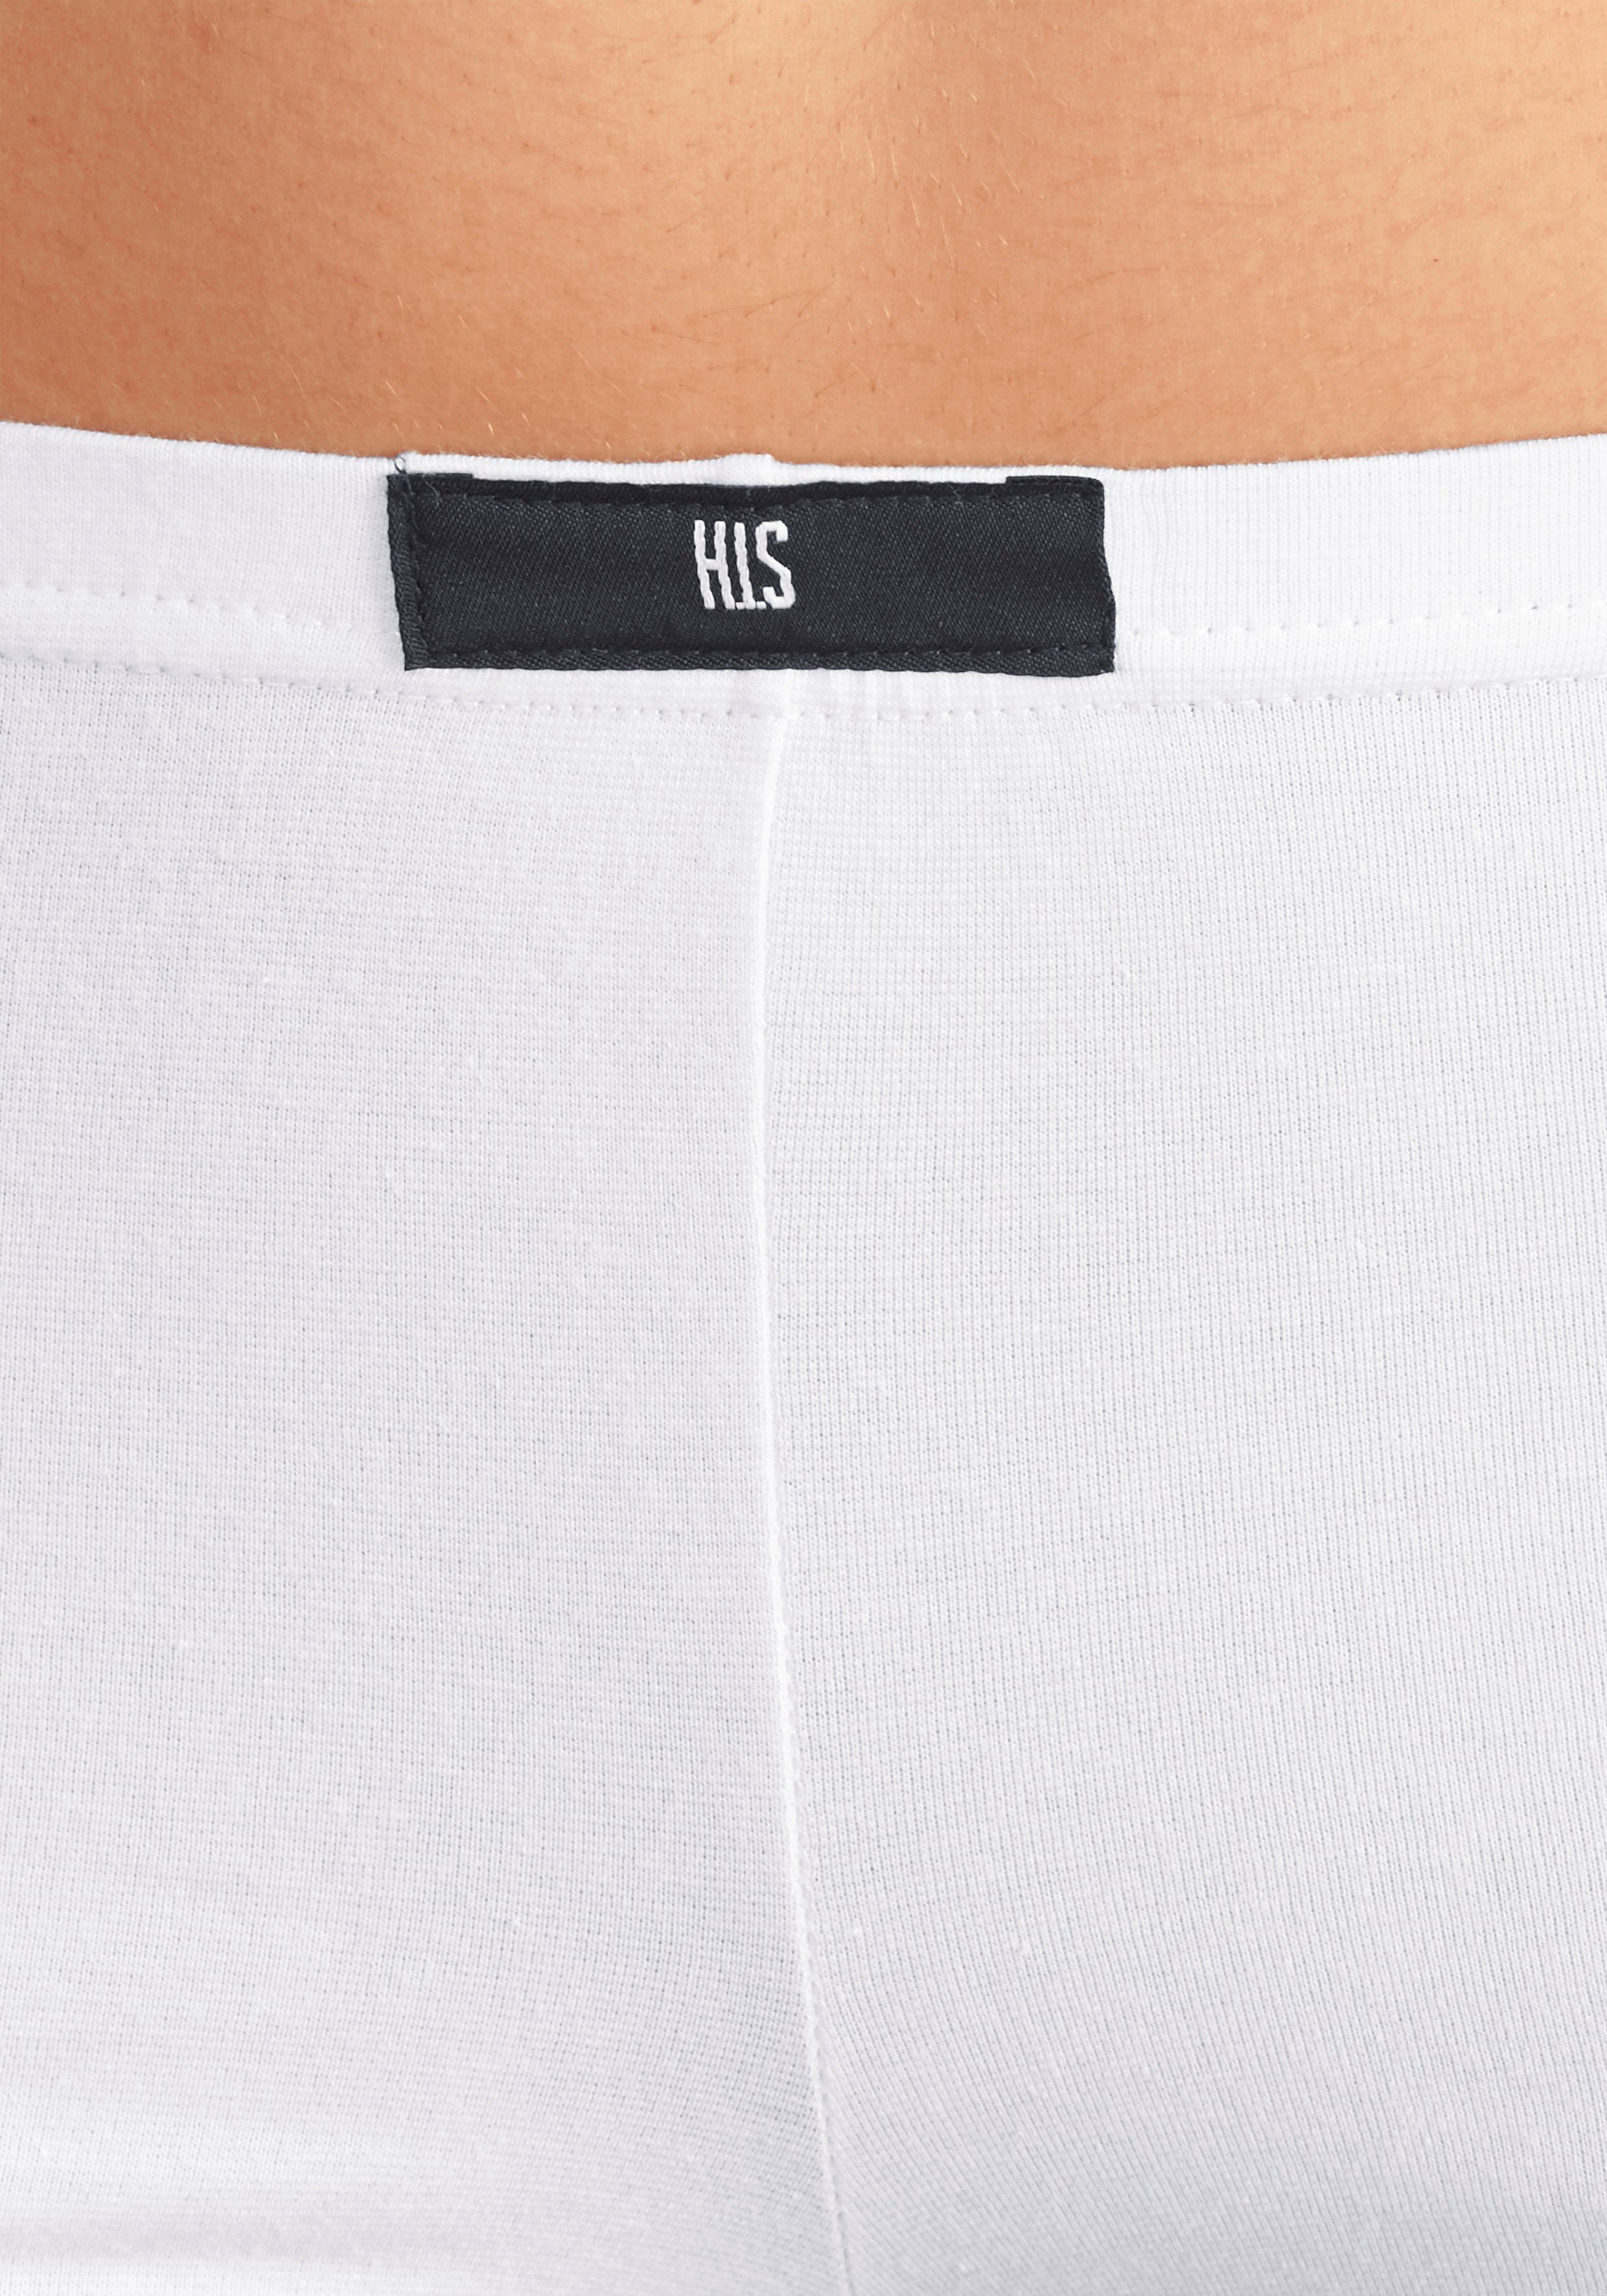 aus Panty 4-St) Baumwoll-Qualität elastischer weiß schwarz, H.I.S (Packung,